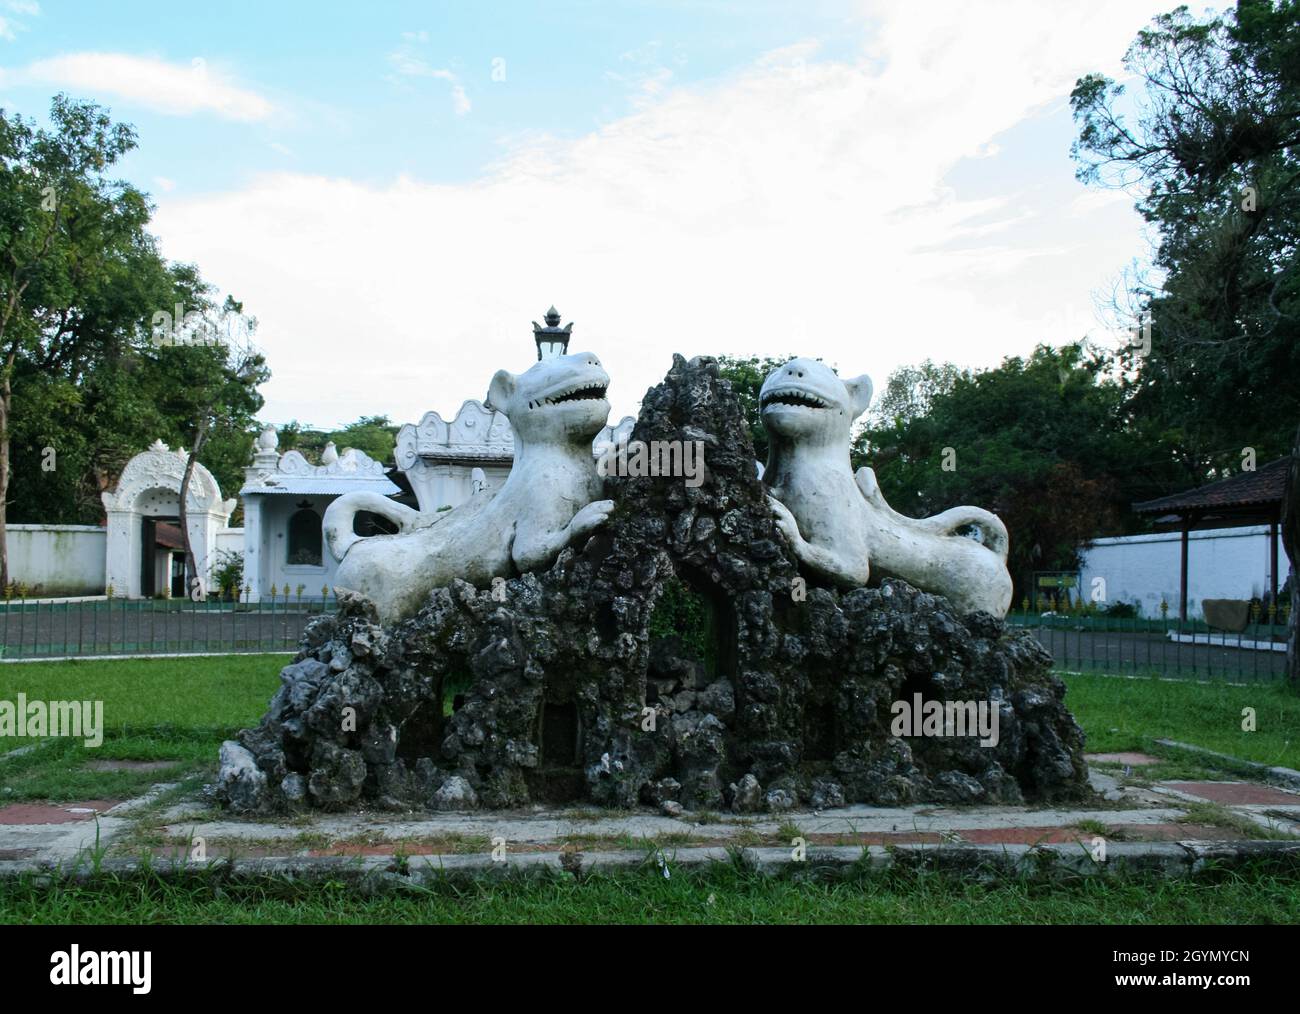 Zwei weiße Tiger-Statuen im Vorgarten des Kasepuhan Palastes. Keraton Kasepuhan ist einer der Paläste in Cirebon, West-Java. Stockfoto